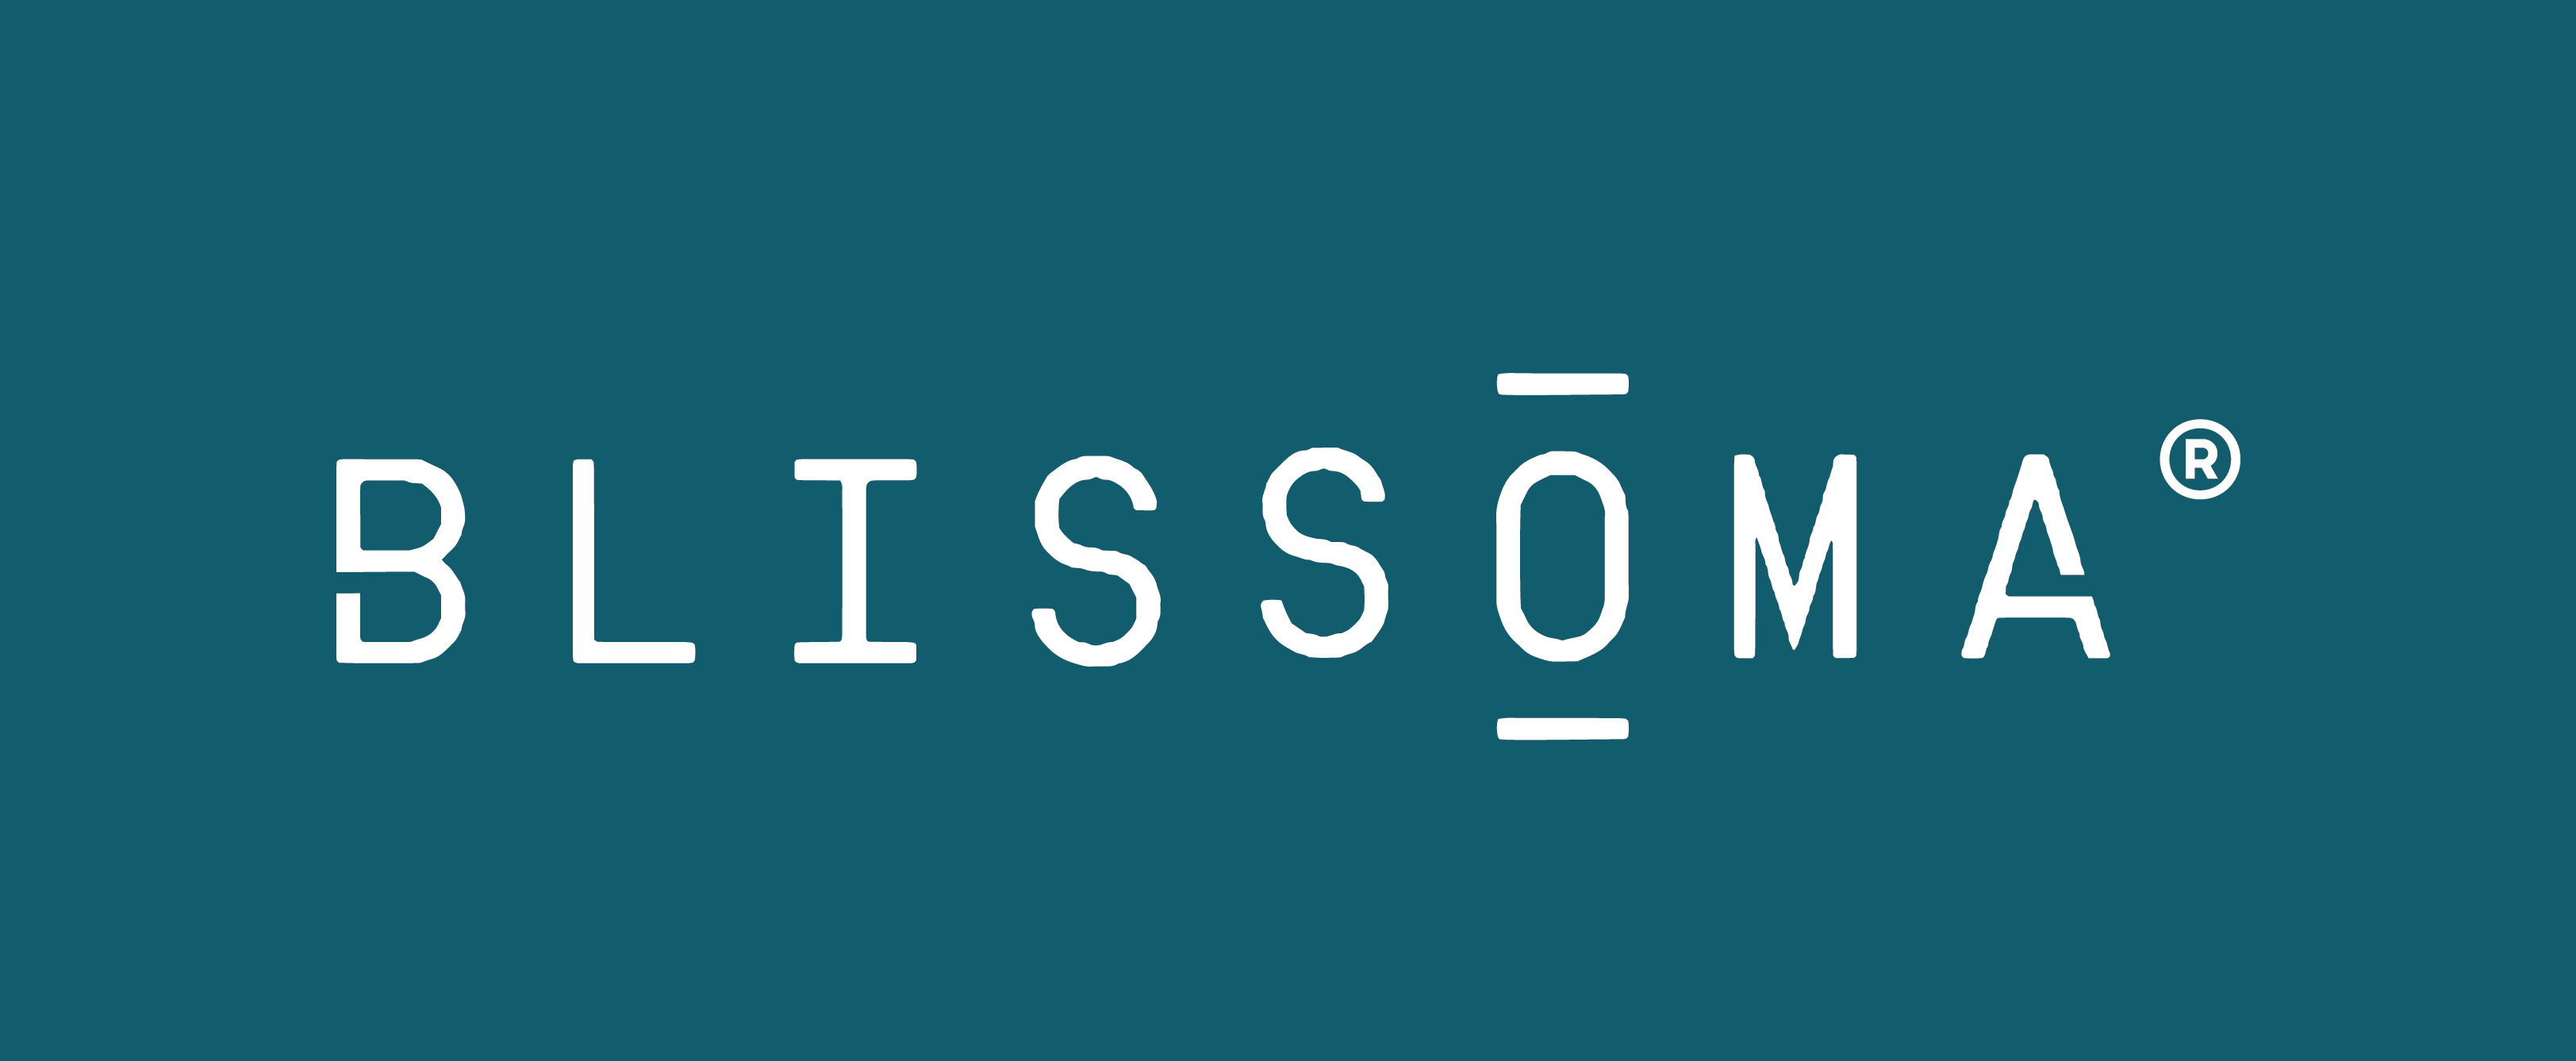 BLISSOMA_logo_